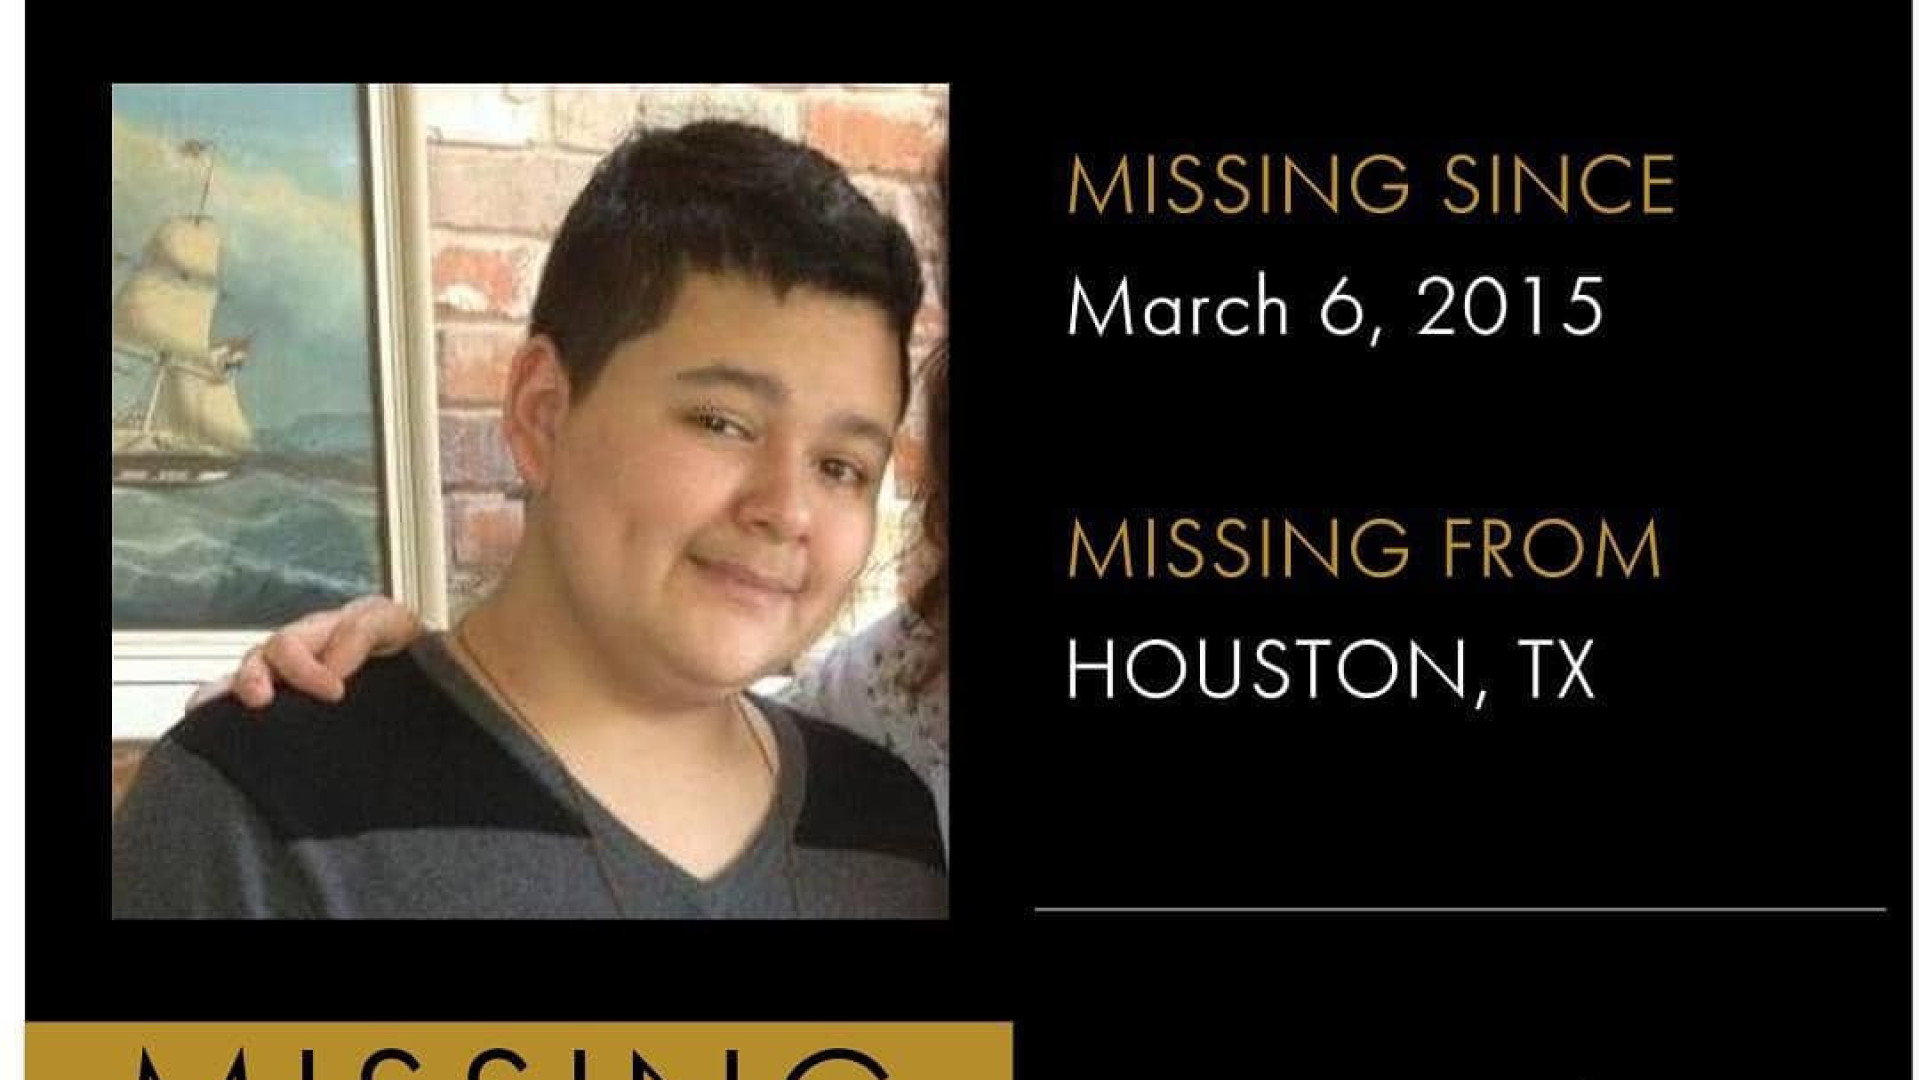 Jovem desaparecido há 8 anos encontrado com vida no Texas